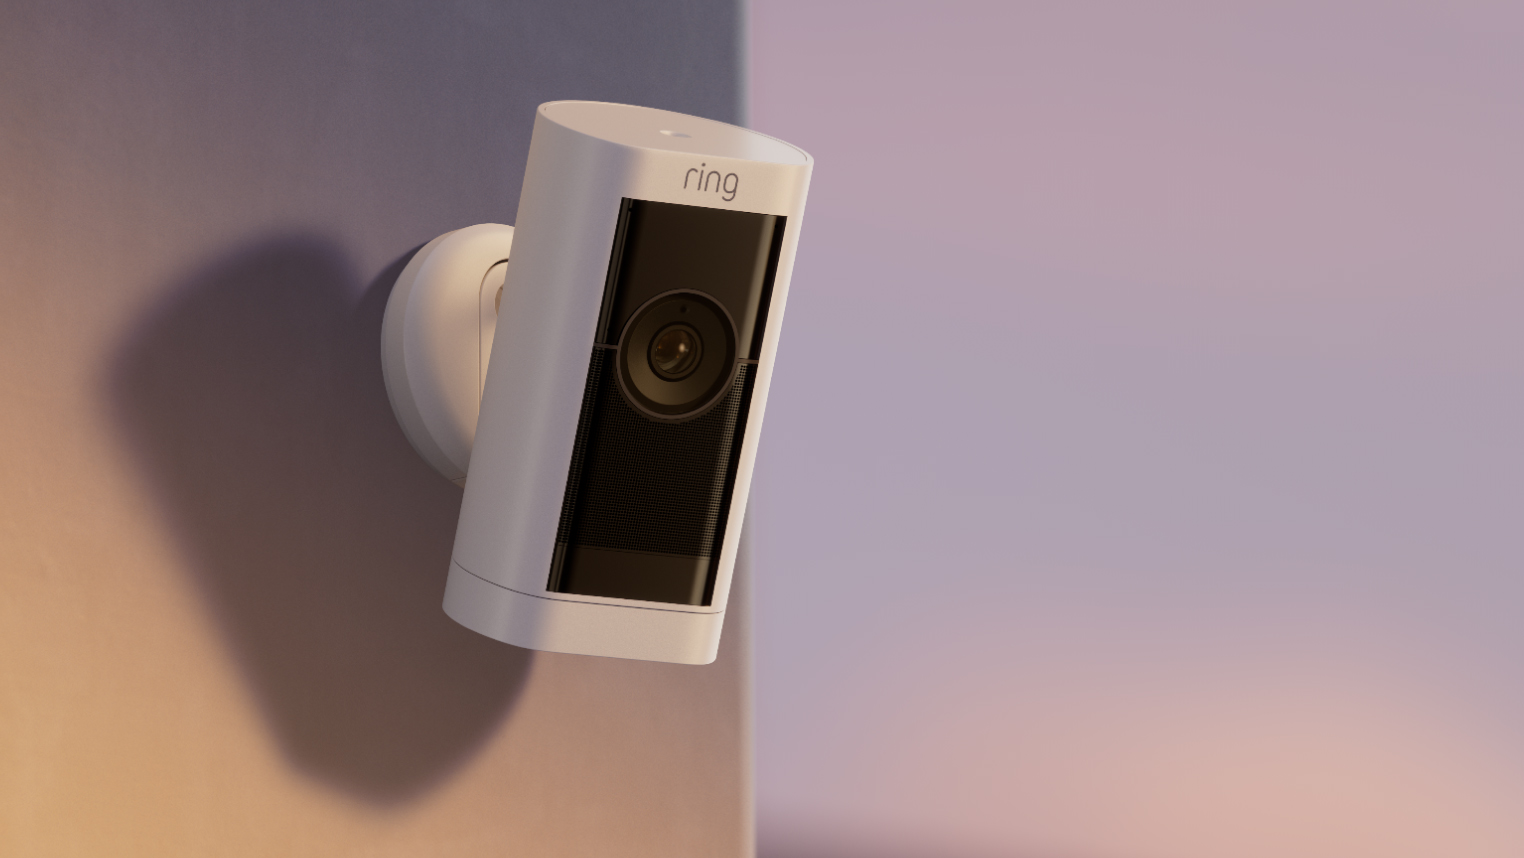 دوربین امنیتی Ring Stick Up Cam Pro که روی دیوار نصب شده است